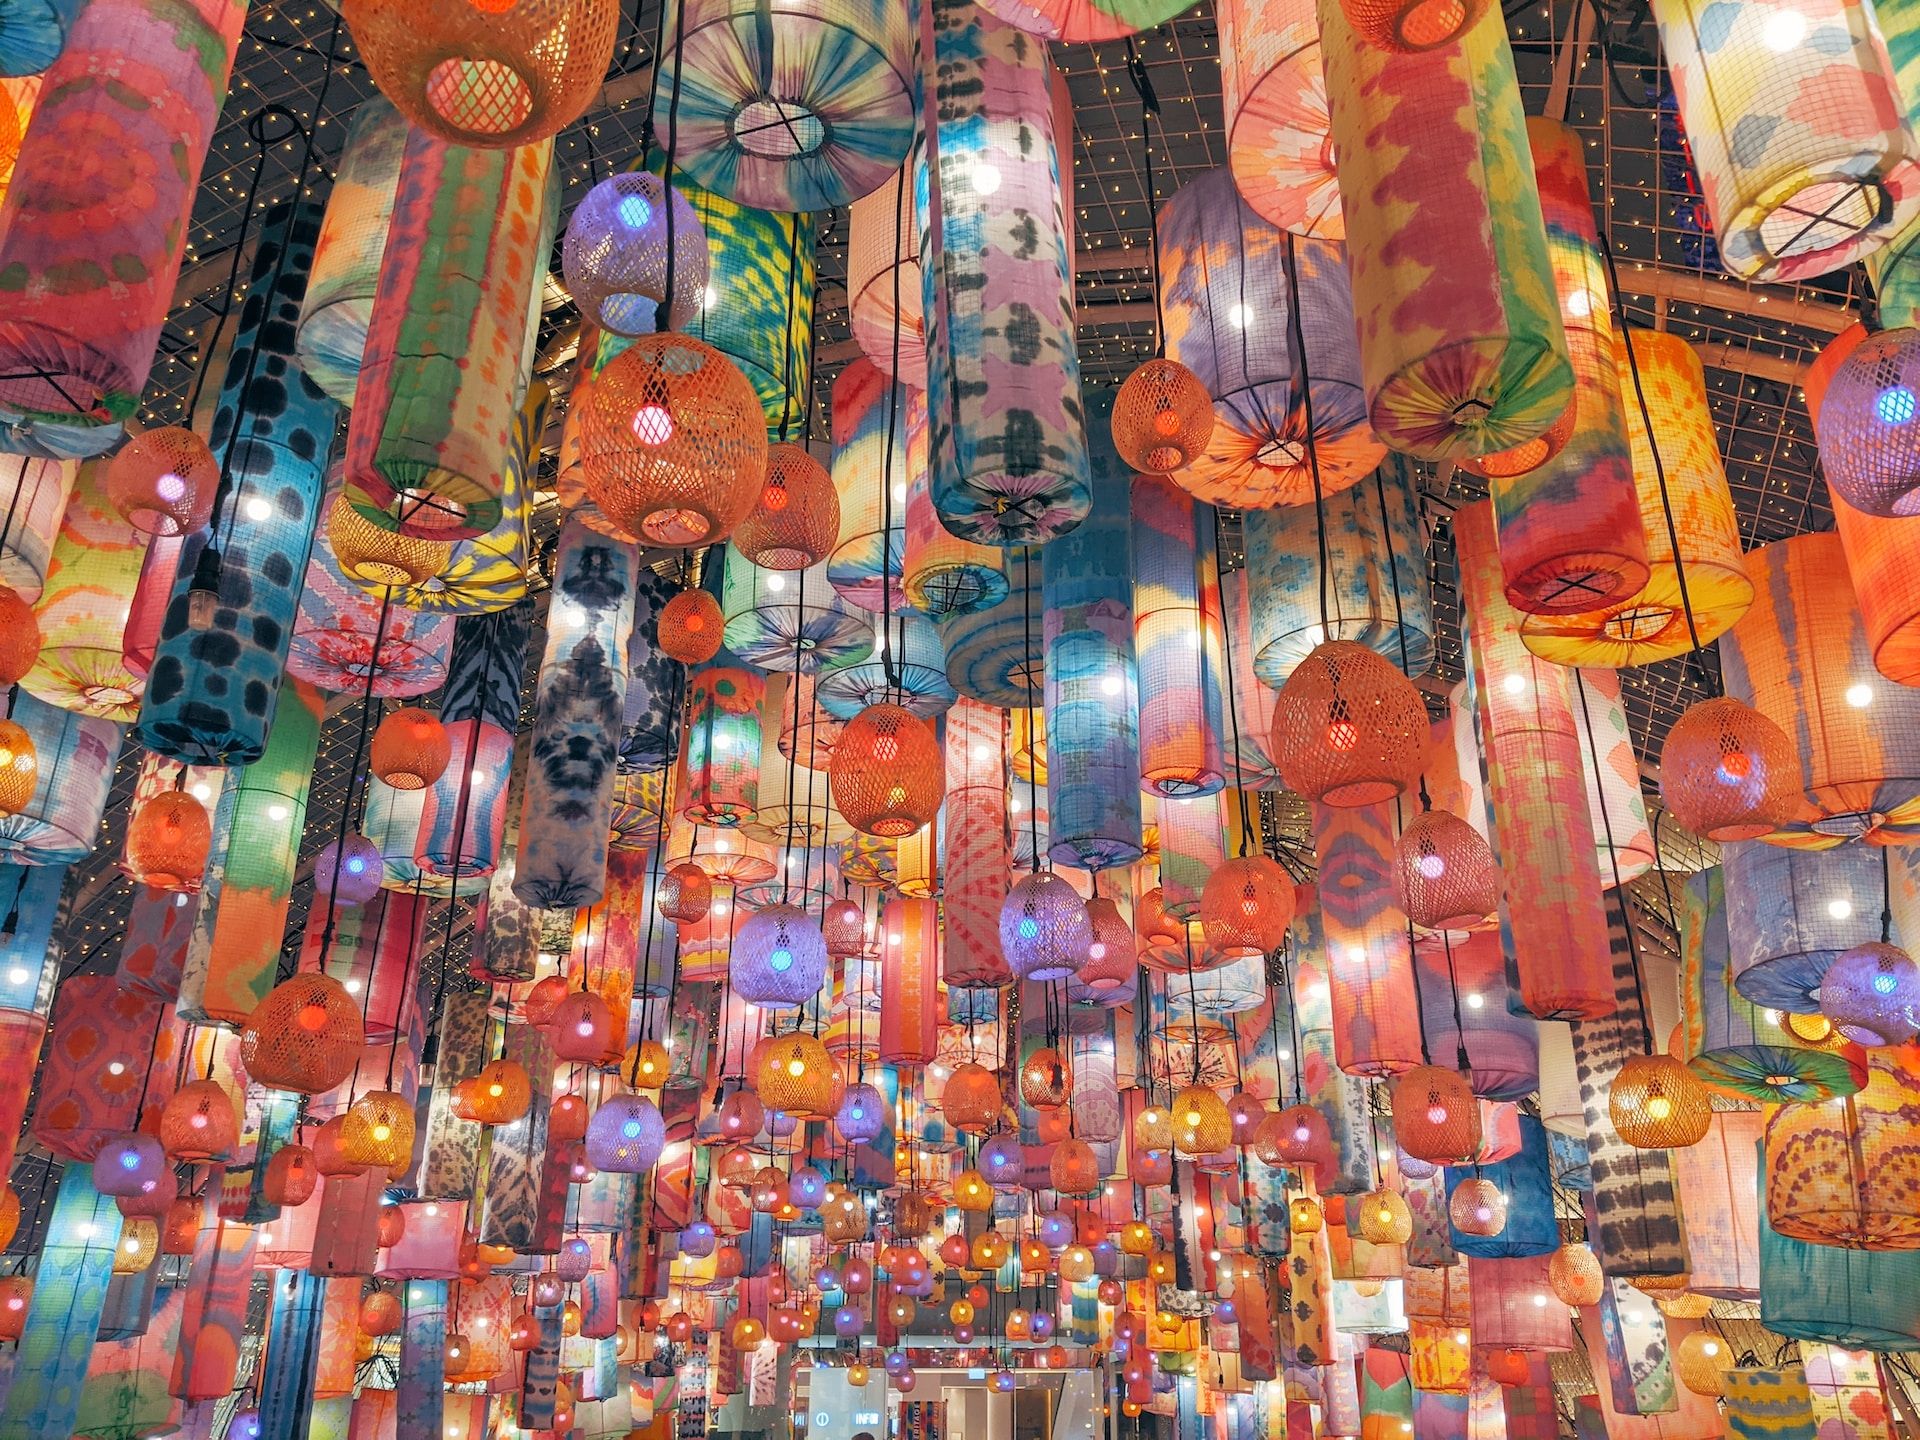 Beautiful lanterns